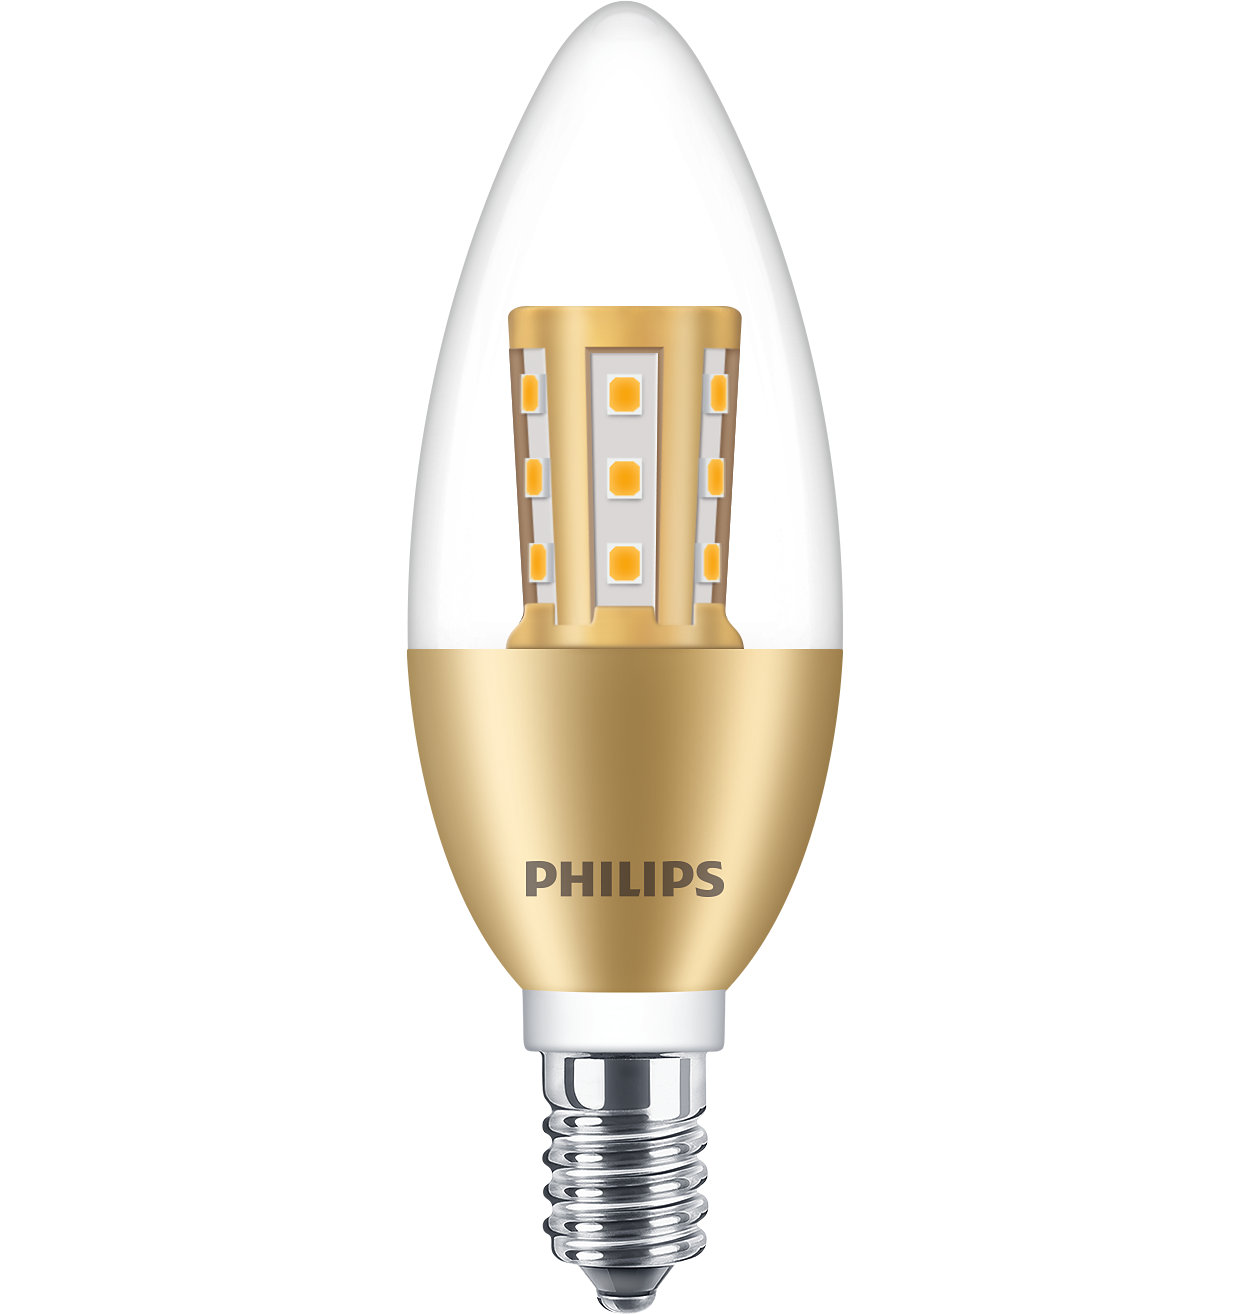 透明 LED 烛泡为您的家居增添闪亮光彩